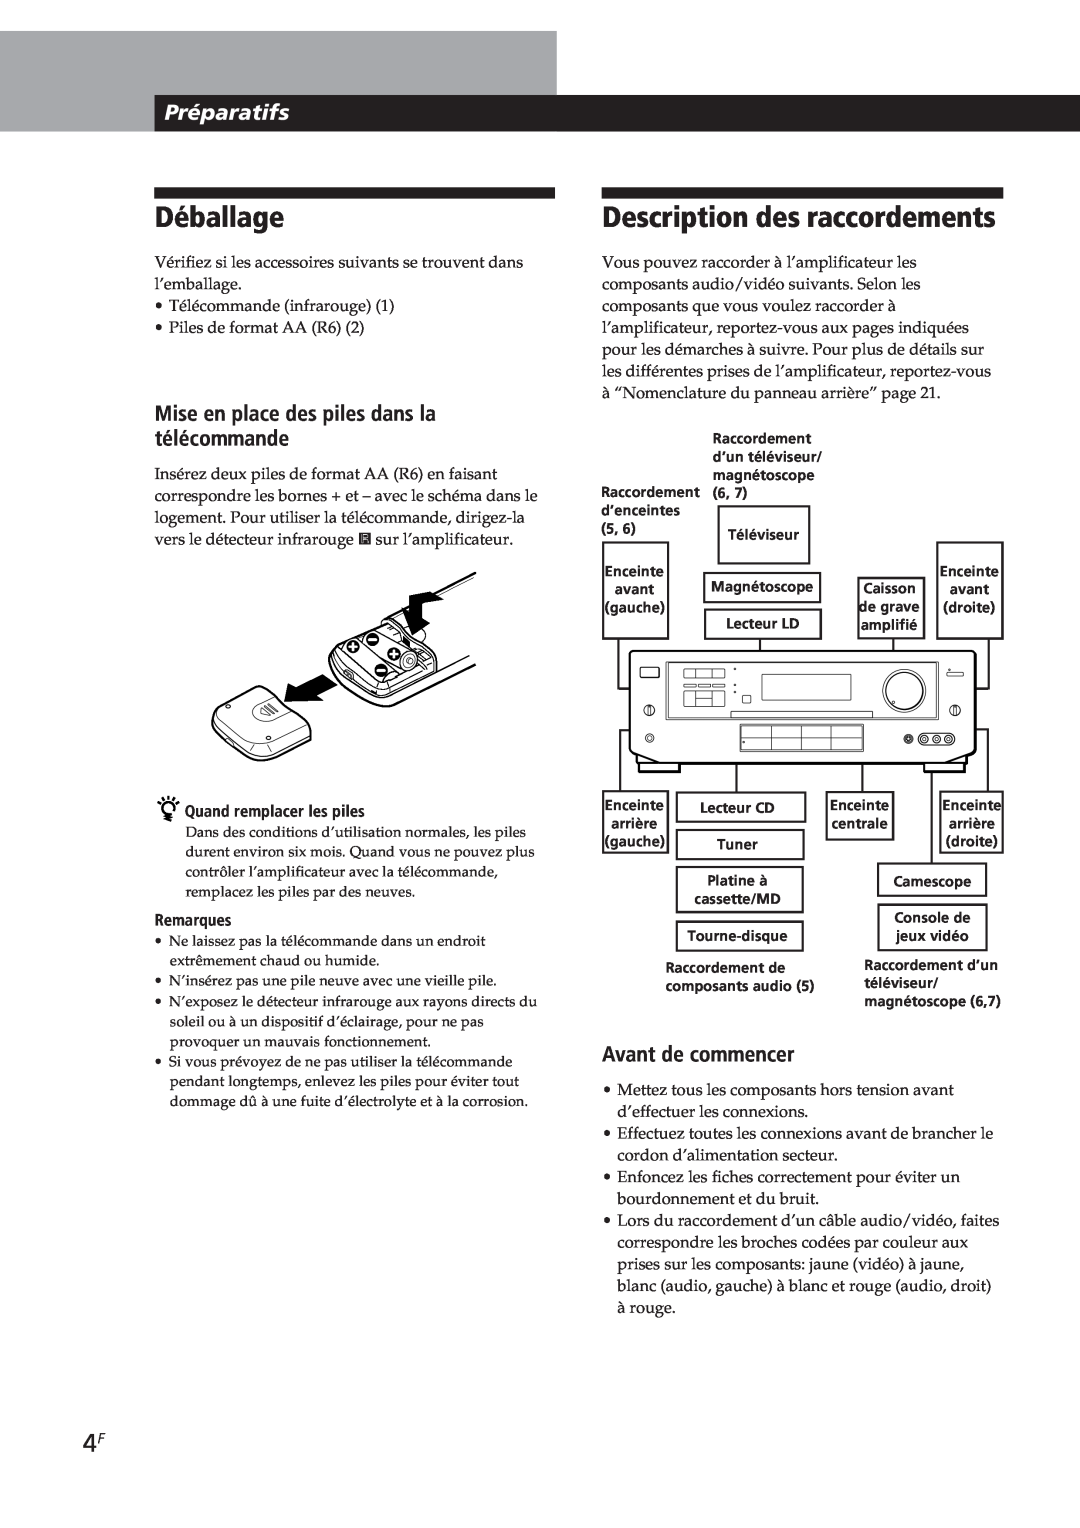 Sony TA-VE700 manual Déballage, Description des raccordements, Préparatifs, Mise en place des piles dans la télécommande 